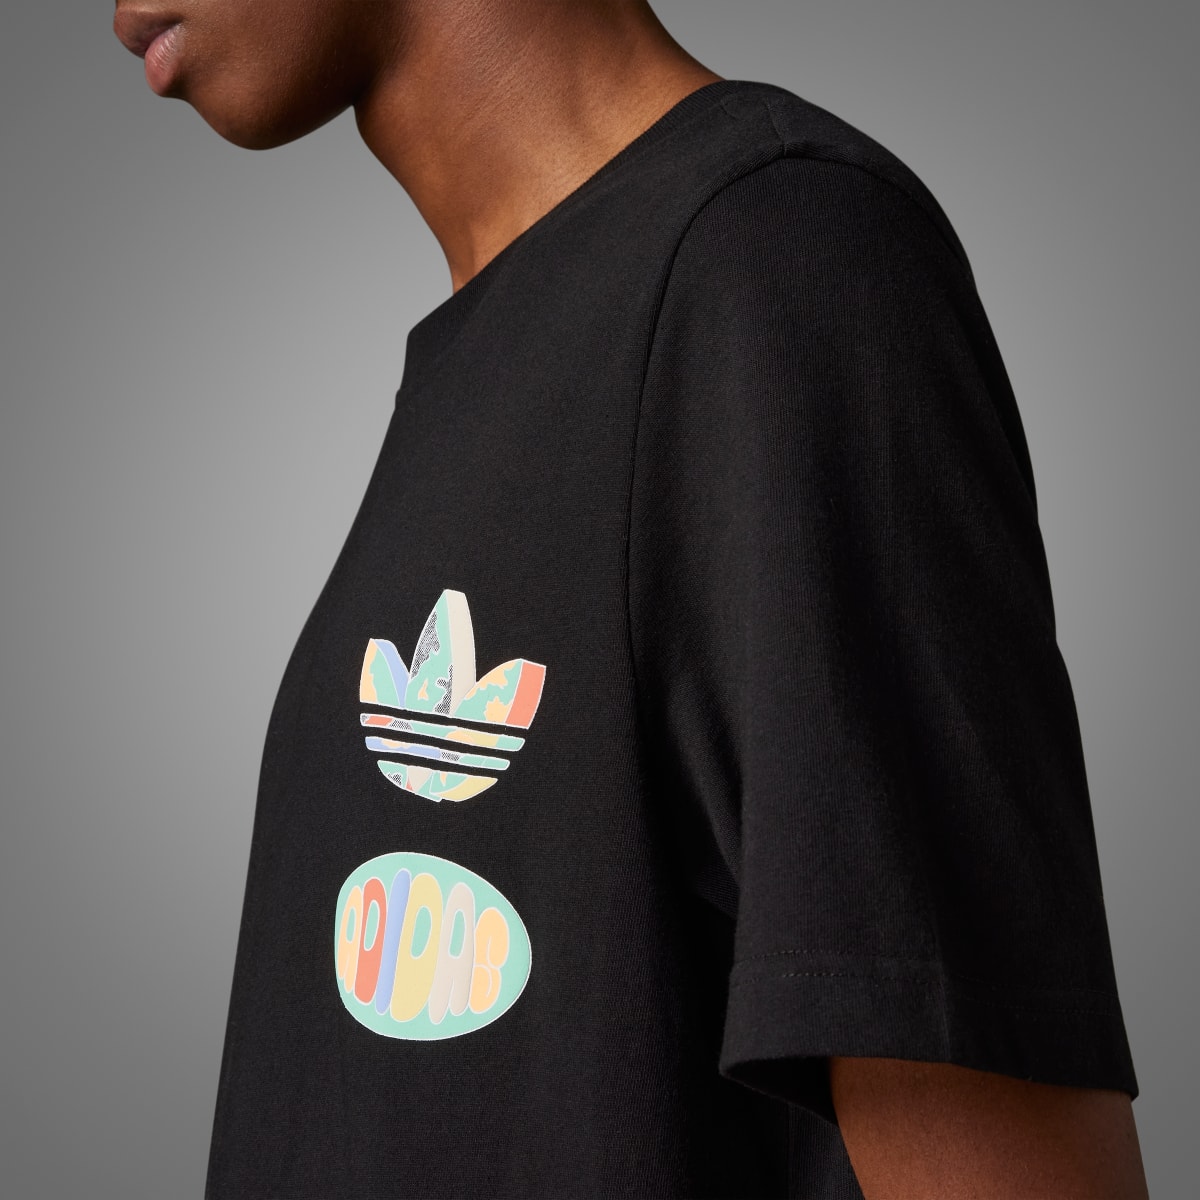 Adidas T-shirt avec graphisme avant/arrière Enjoy Summer. 7